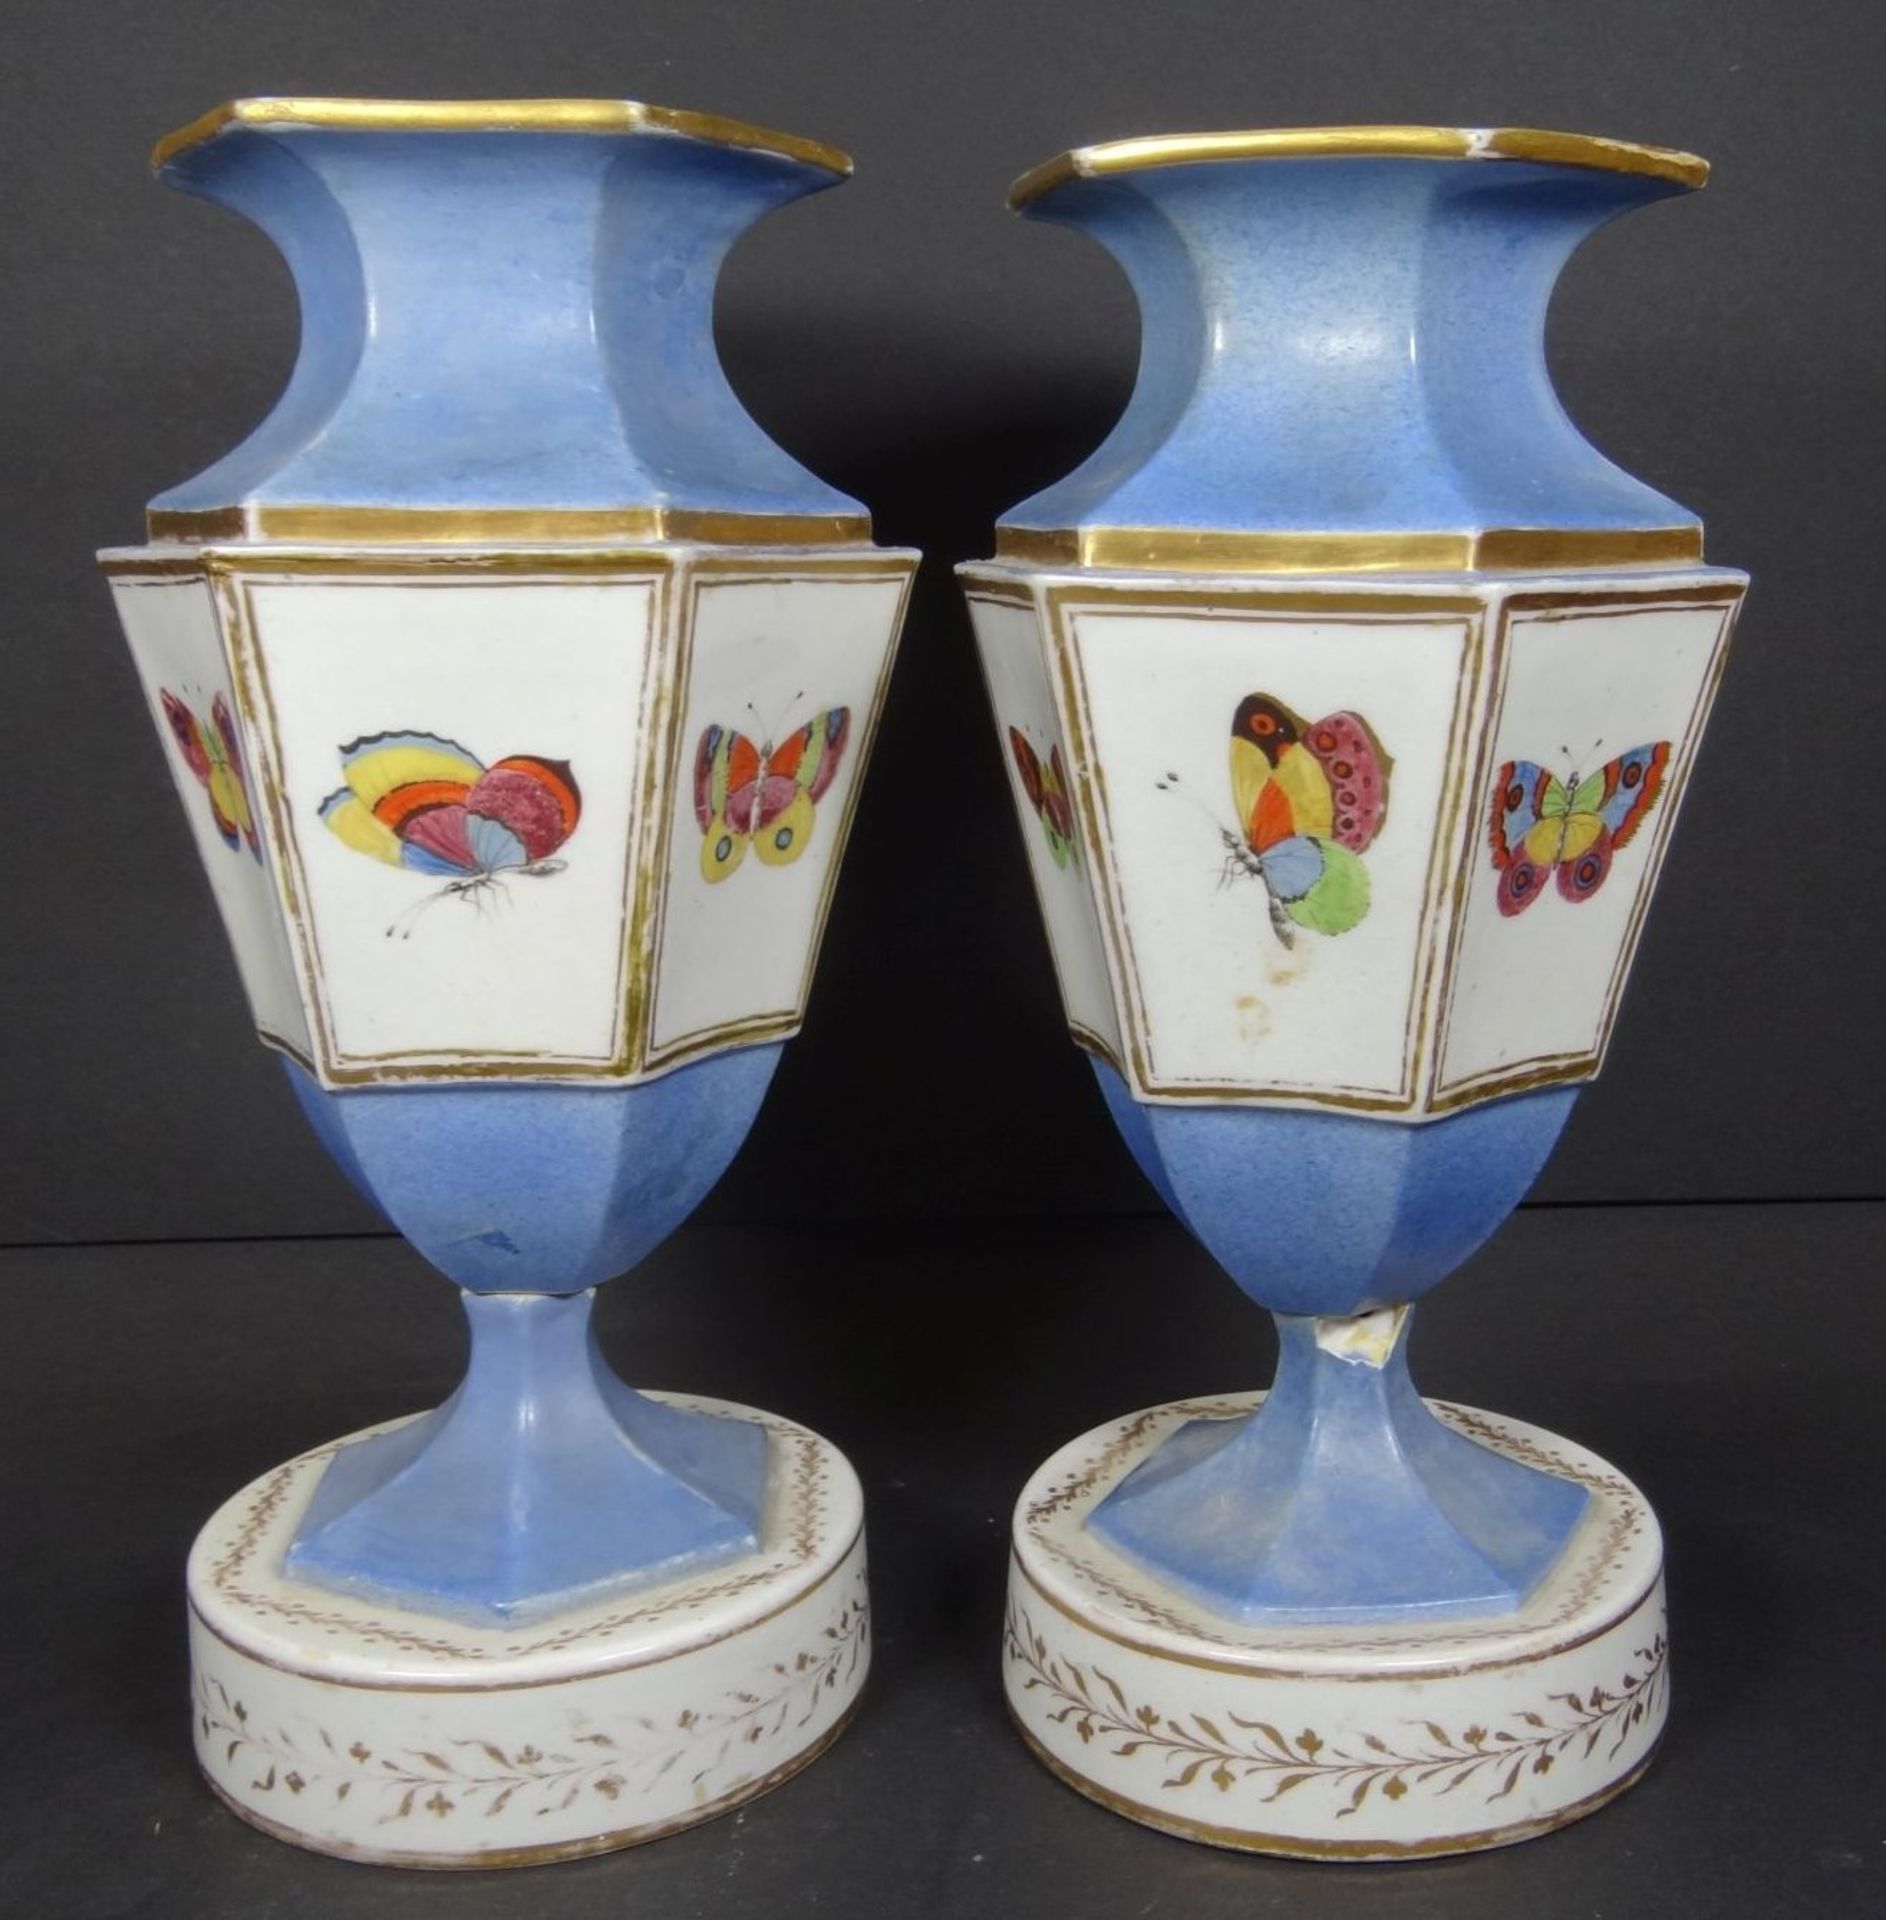 Paar englische Vasen um 1820, bemalt mit Schmetterlingen, beide beschädigt, geklebt, H-22,5 cm